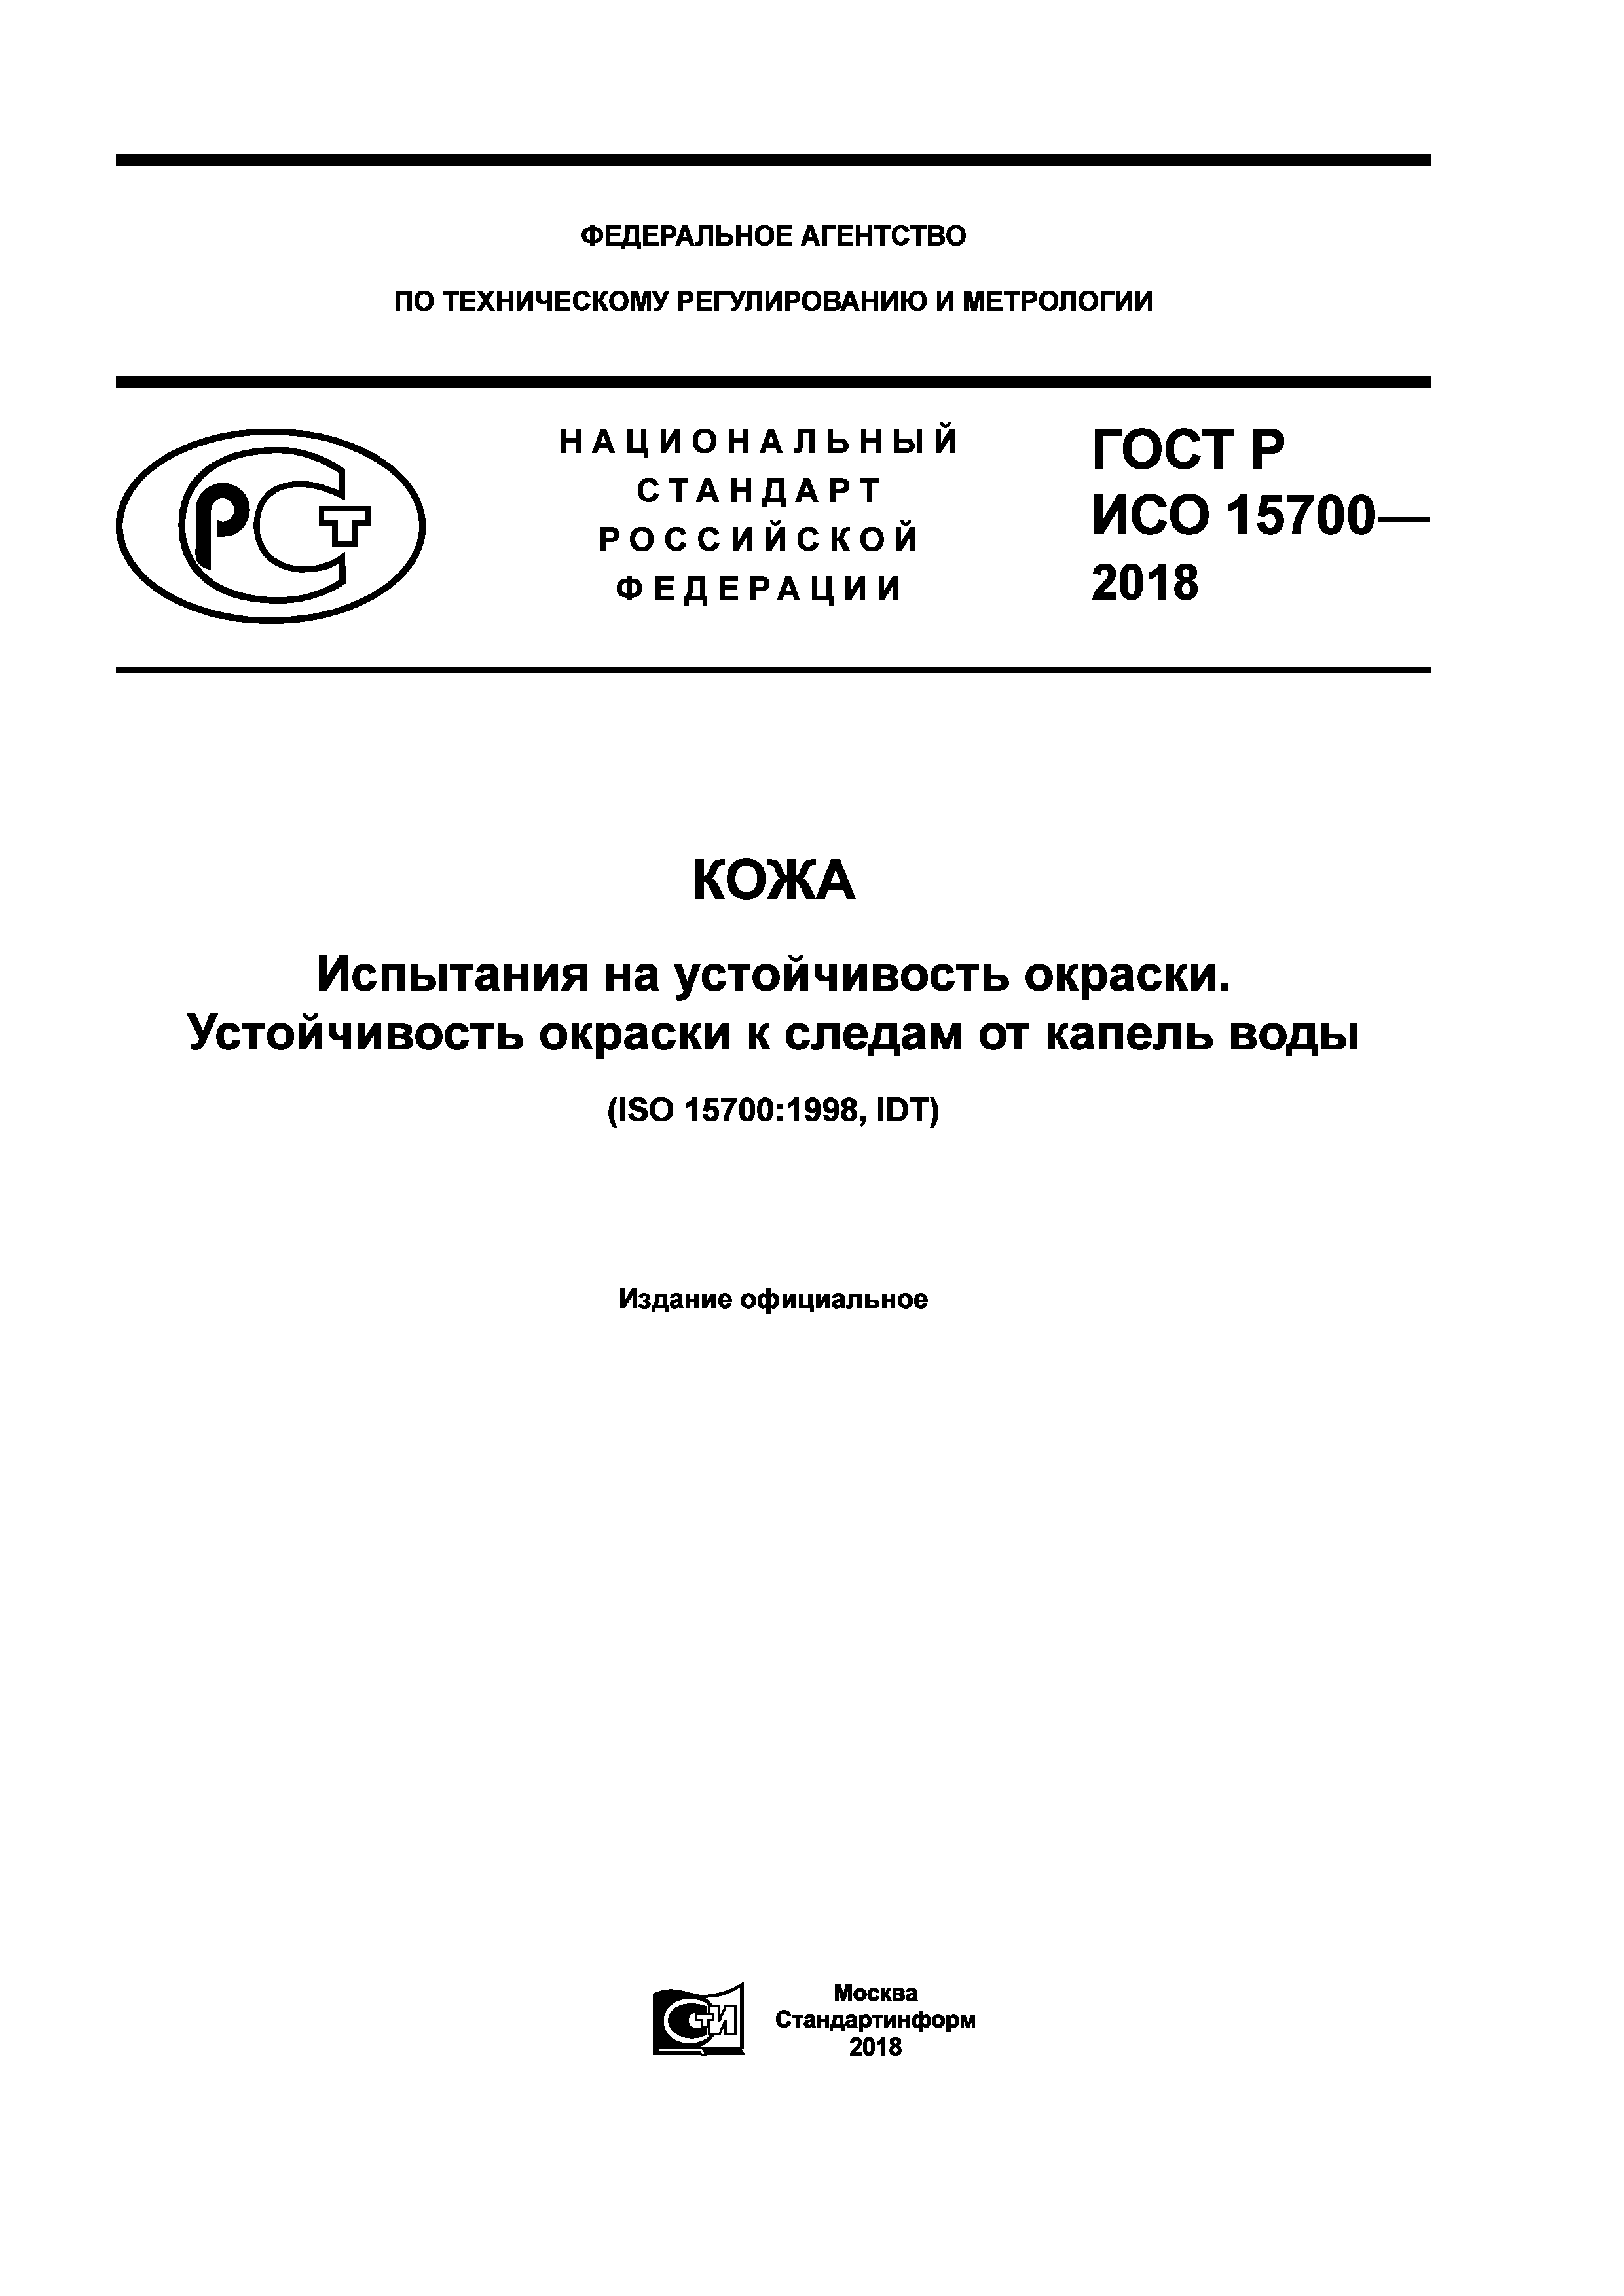 ГОСТ Р ИСО 15700-2018